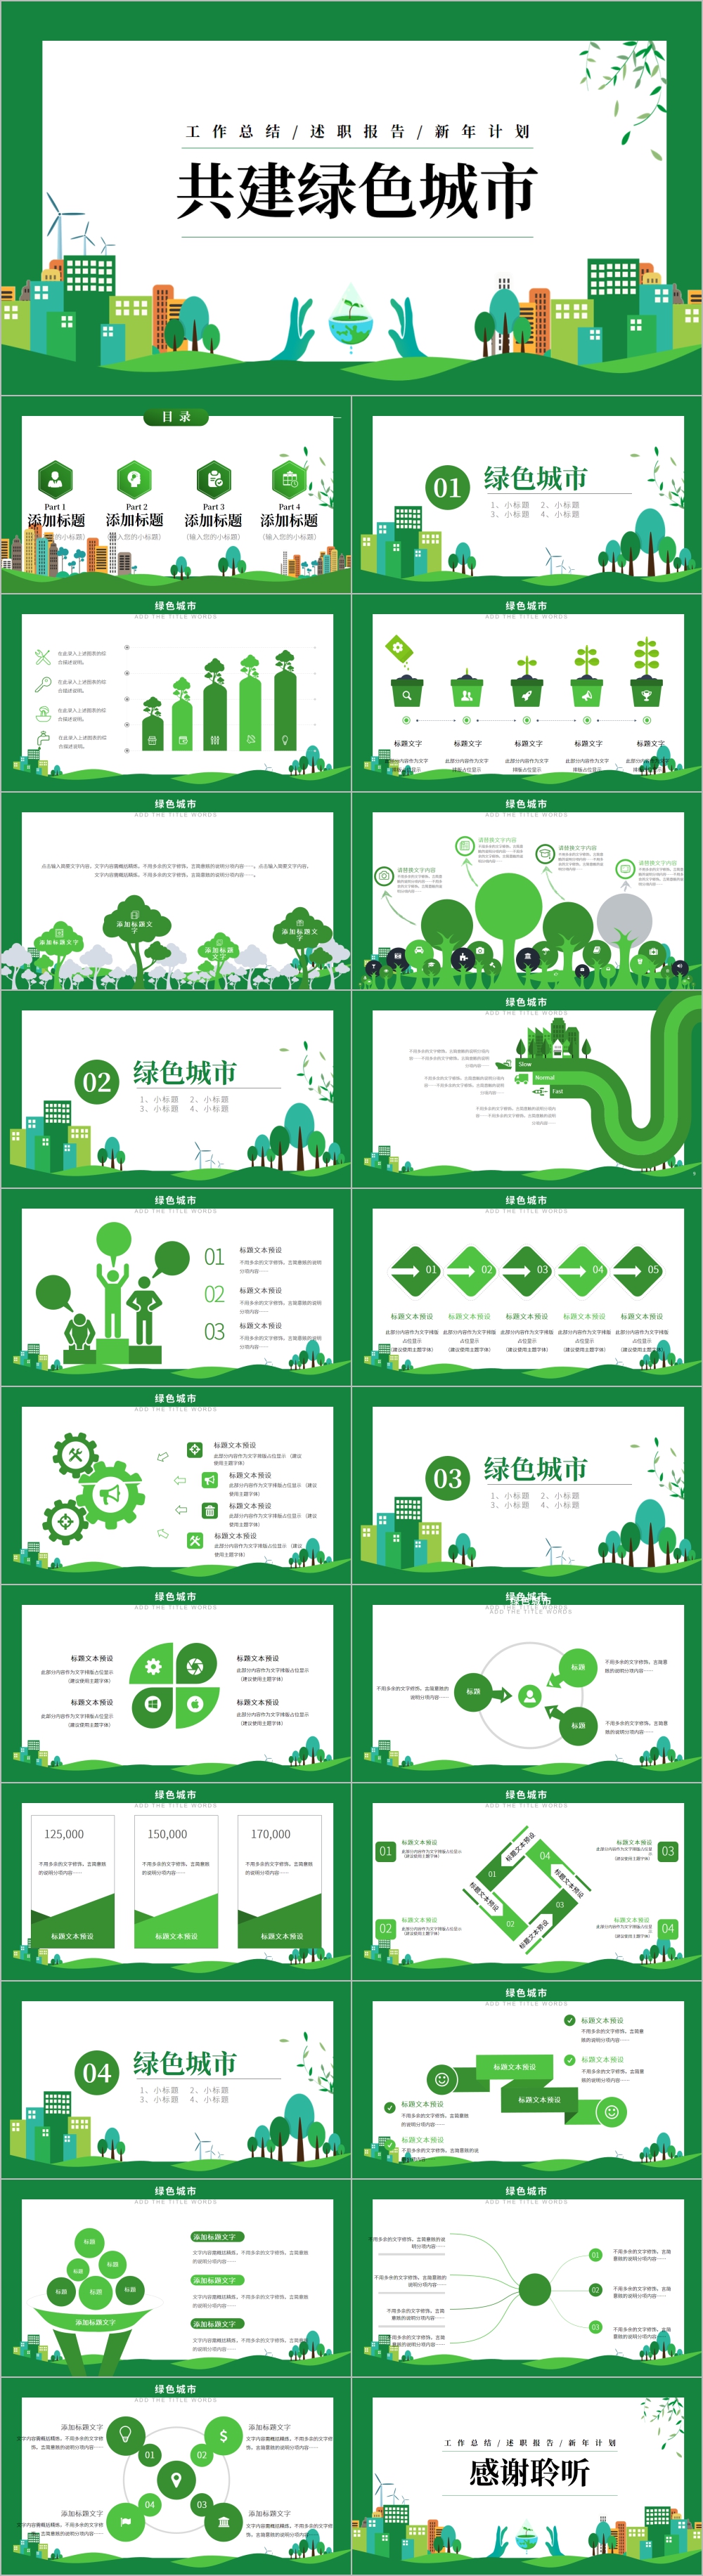 绿色城市构建生态文明城市PPT模板